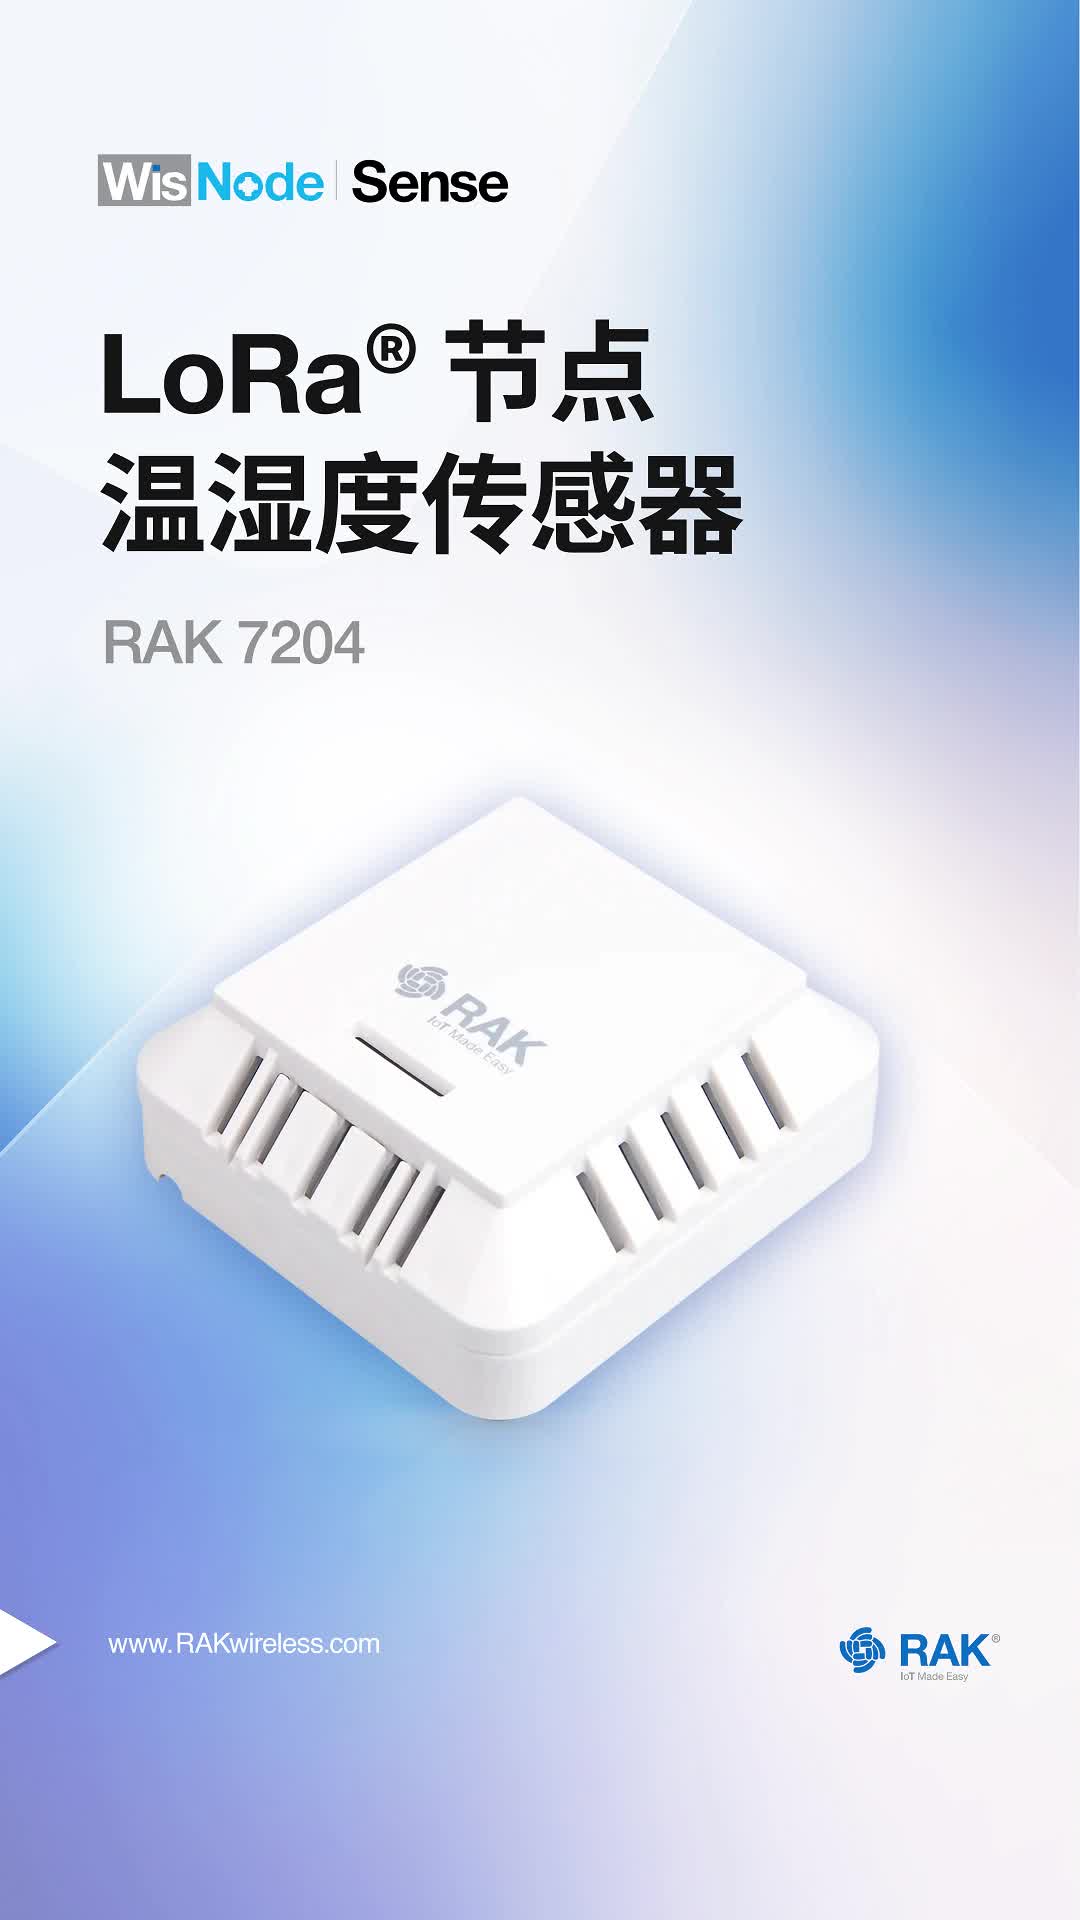 温湿度传感器 LoRa® 节点 RAK7204
#传感器 #温湿度传感器 #聚焦RAK #瑞科慧联 